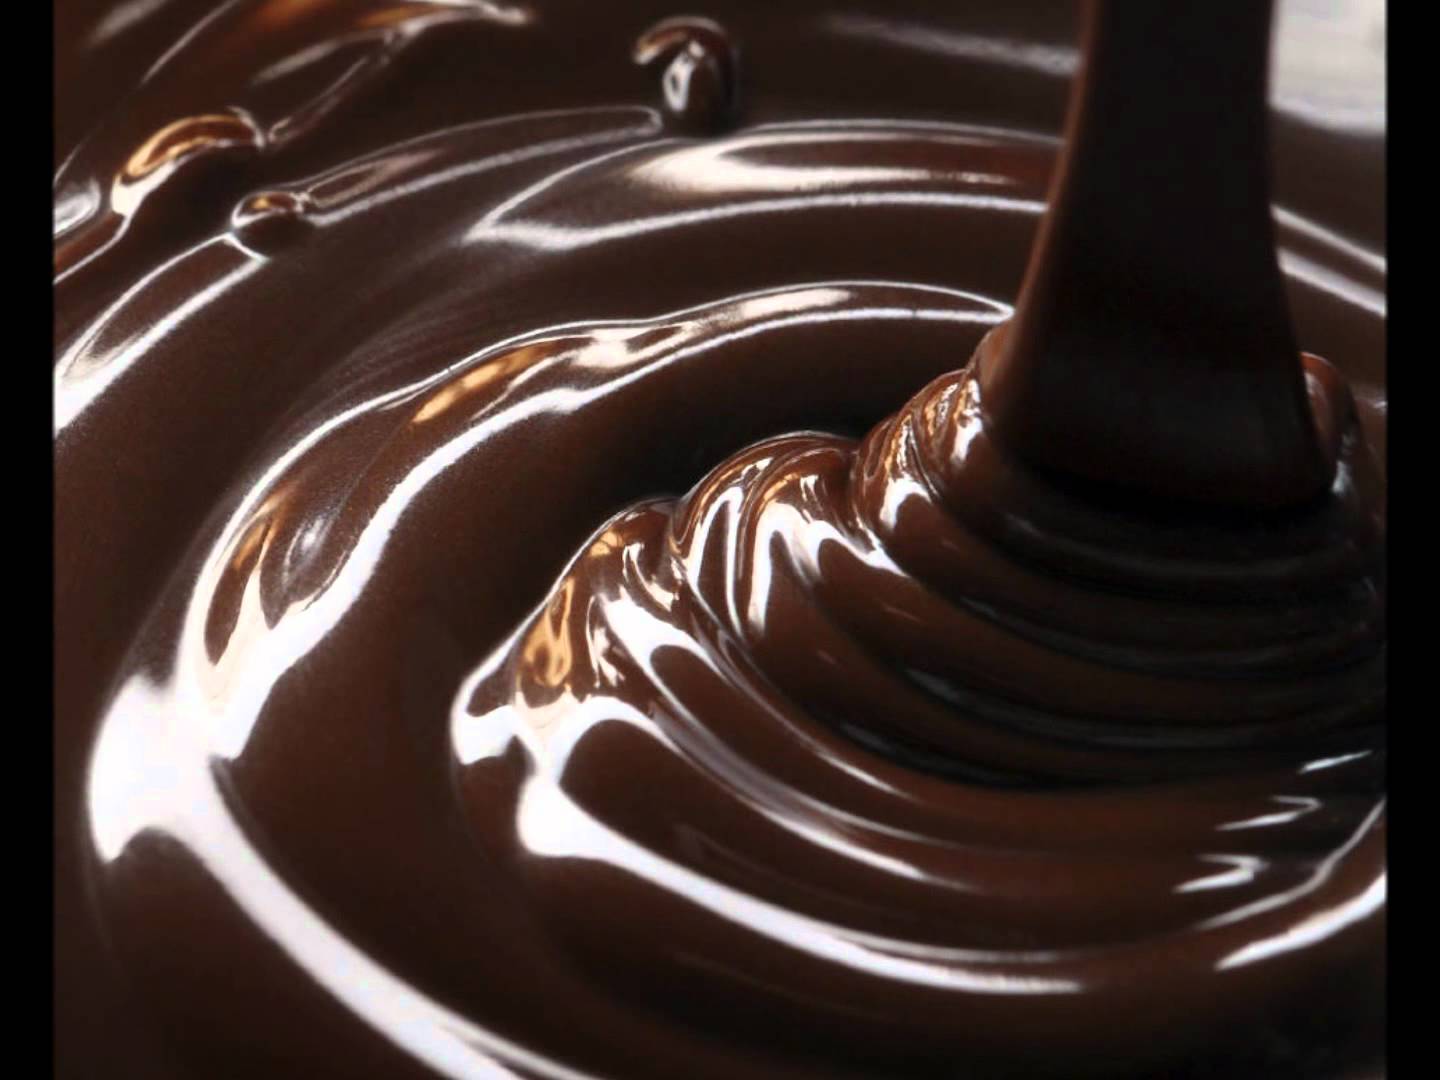 Ну шоколадом. Шоколадная глазурь кувертюр. Жидкий шоколад. Расплавленный шоколад. Растопленный шоколад.